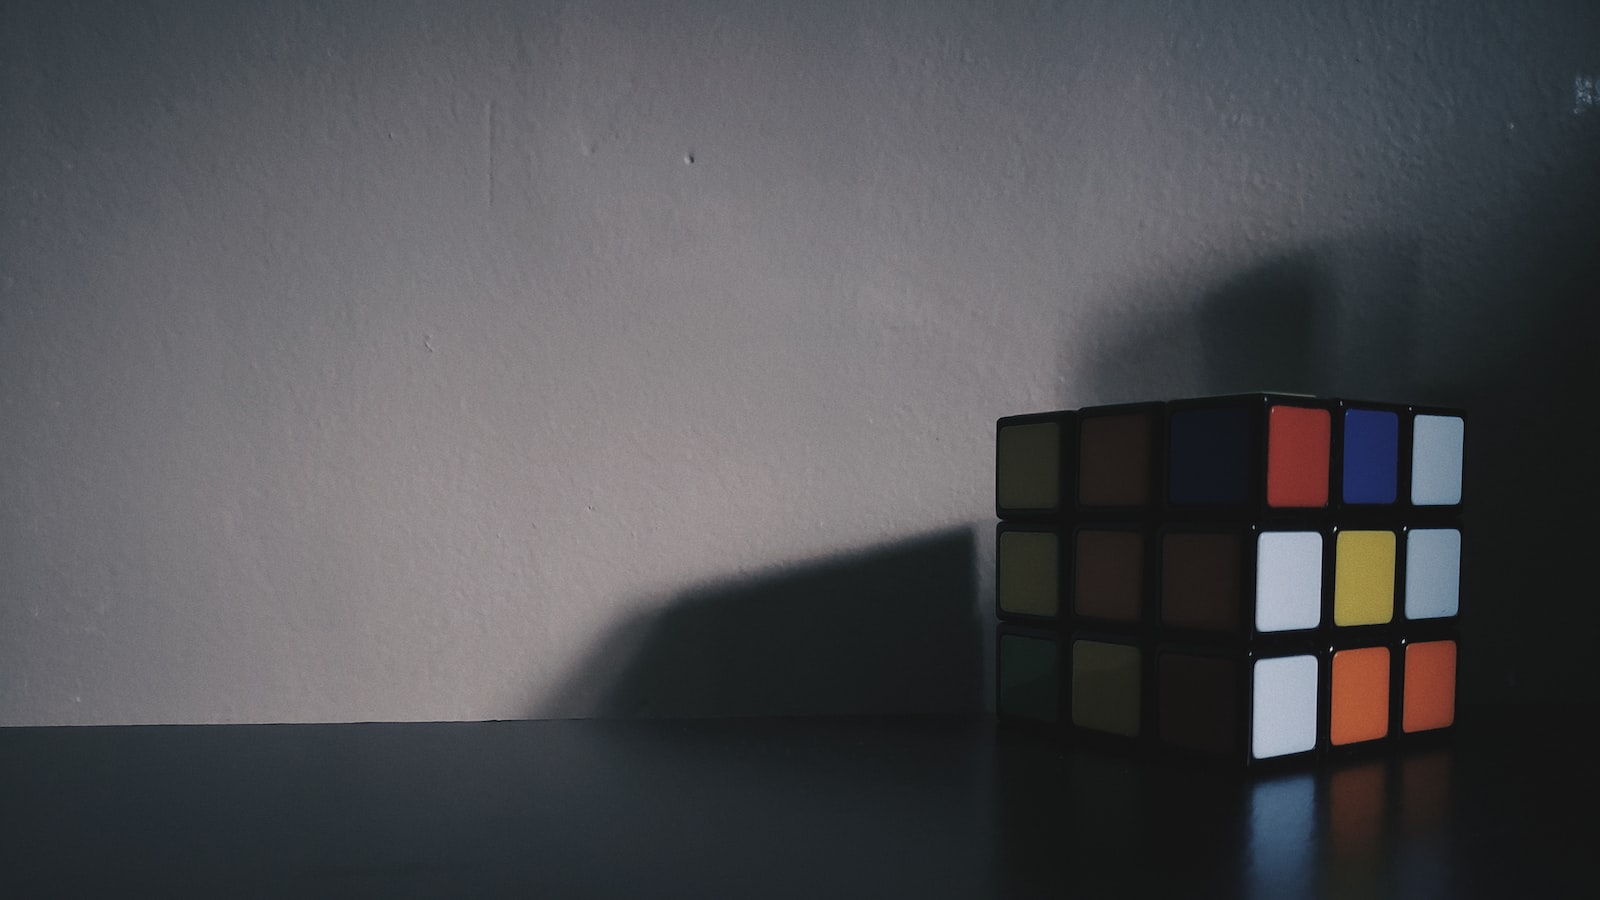 4. Triển khai thủ thuật để giải mã Rubik 4x4